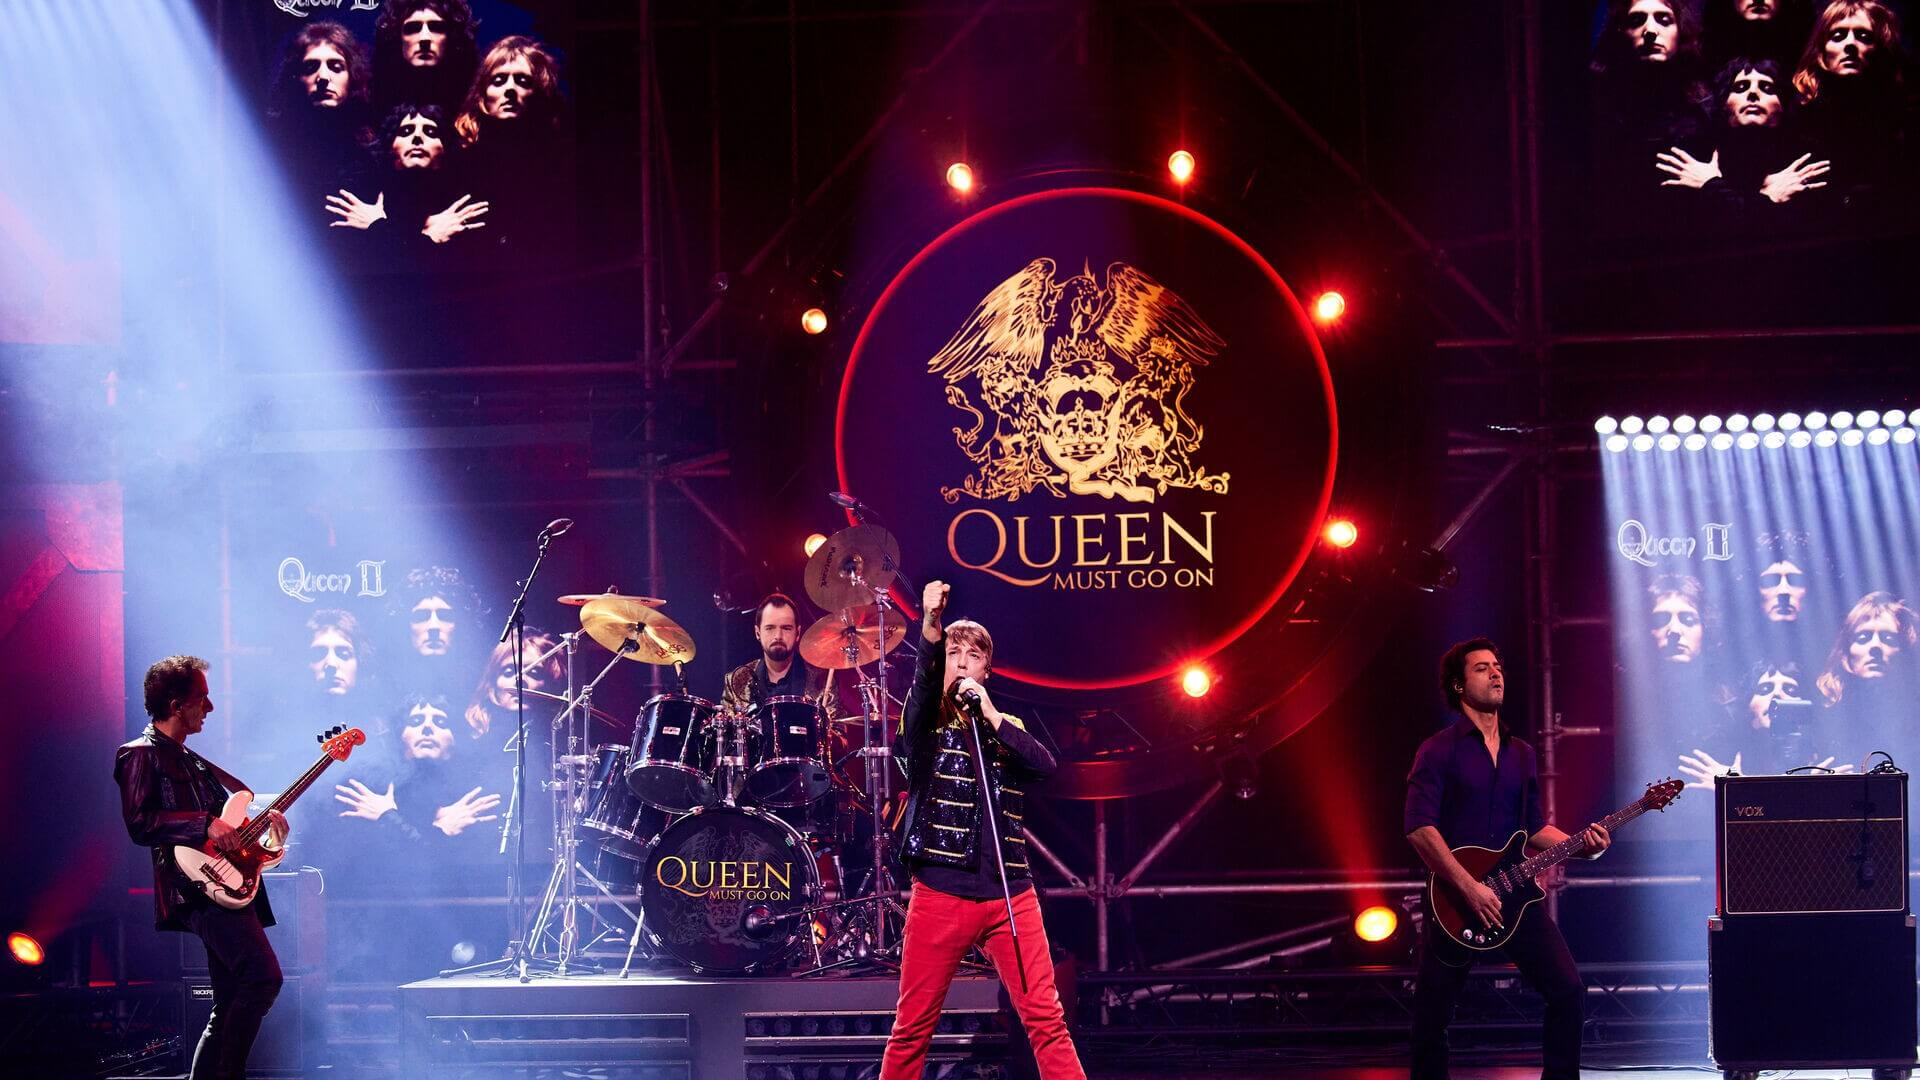 Campagnebeeld Queen Must Go On - Foto William Rutten